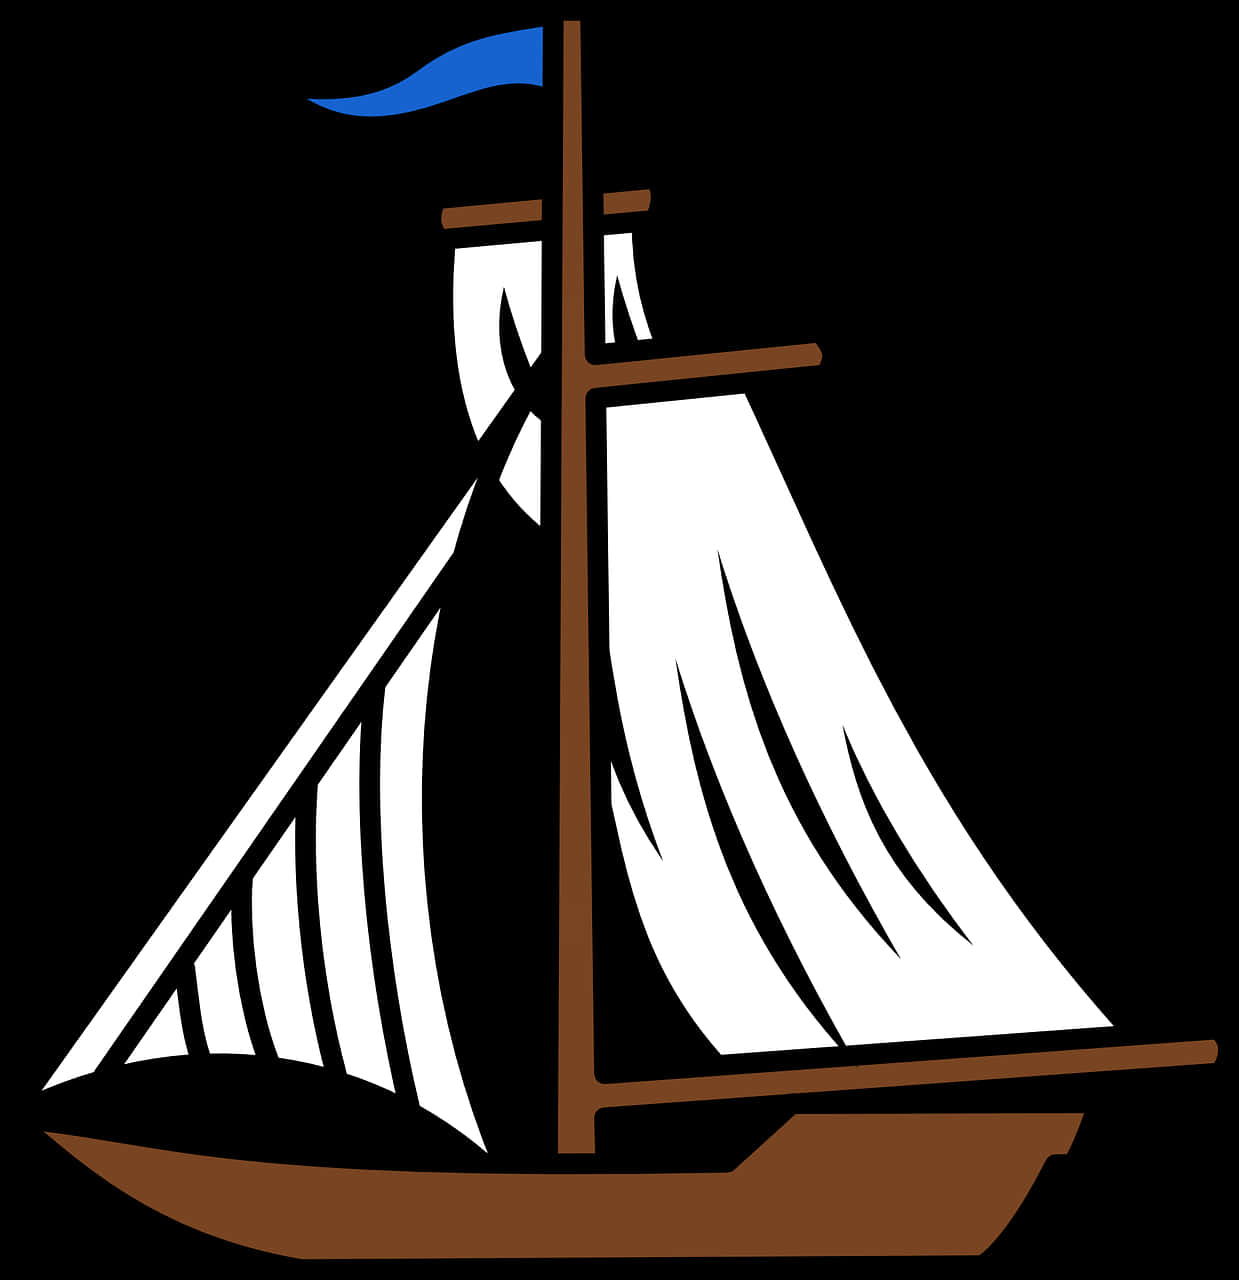 Sailboat Vector Art PNG image